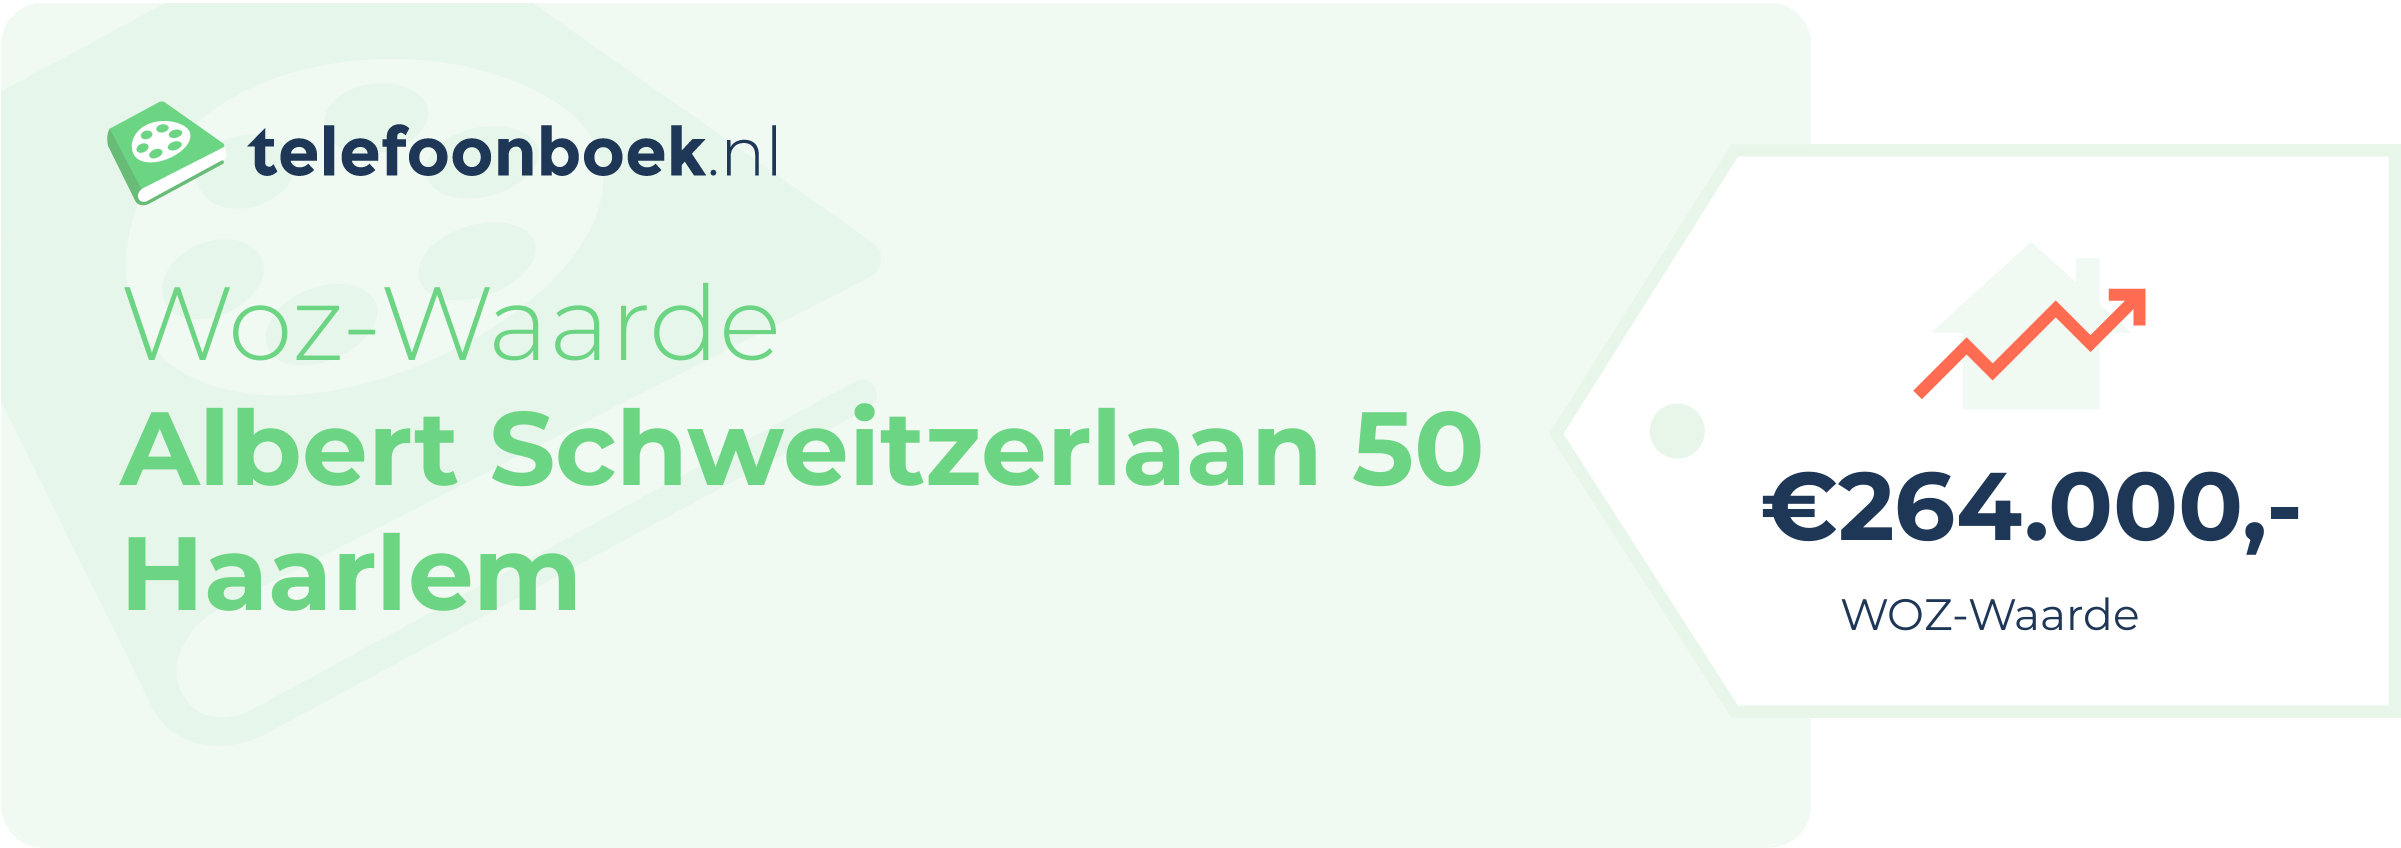 WOZ-waarde Albert Schweitzerlaan 50 Haarlem